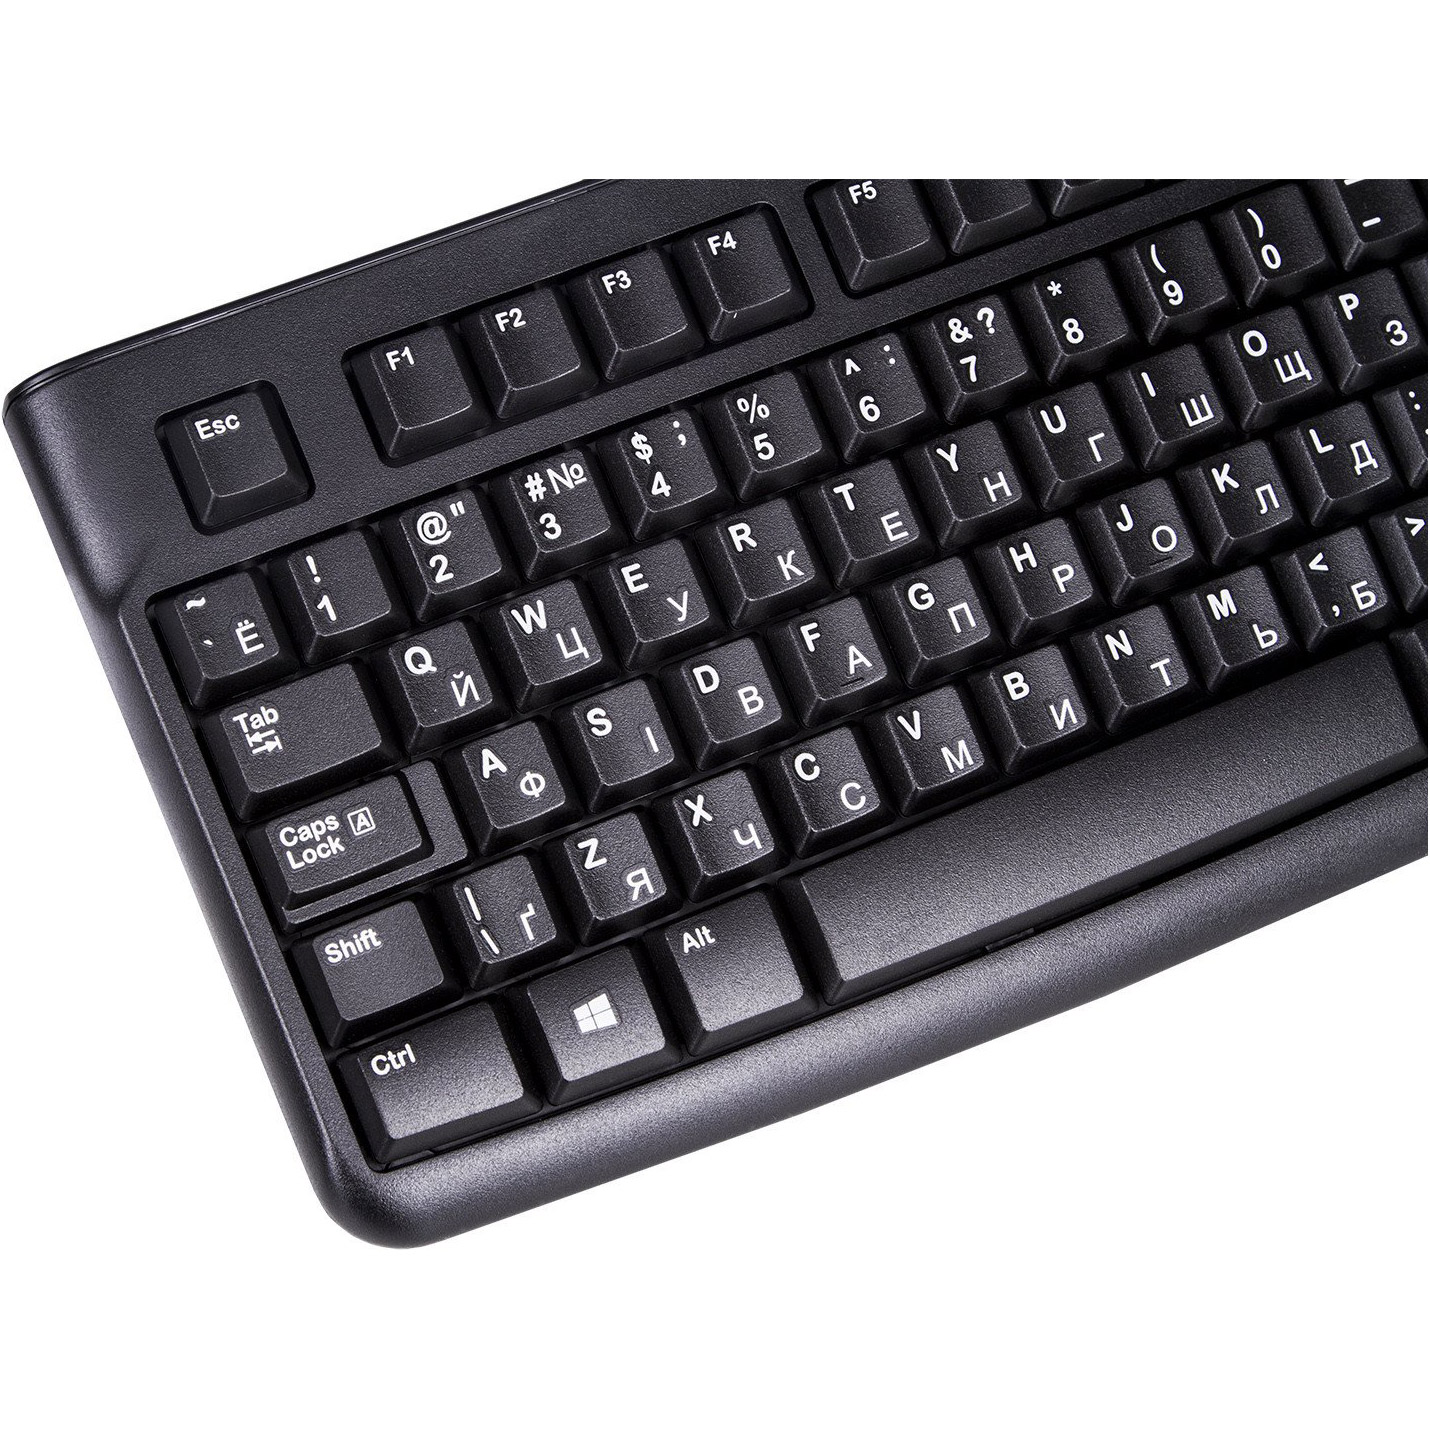 Logitech раскладка. Logitech k120. Клавиатура Logitech Keyboard k120. Клавиатура Logitech Classic k120. Logitech k120 USB.